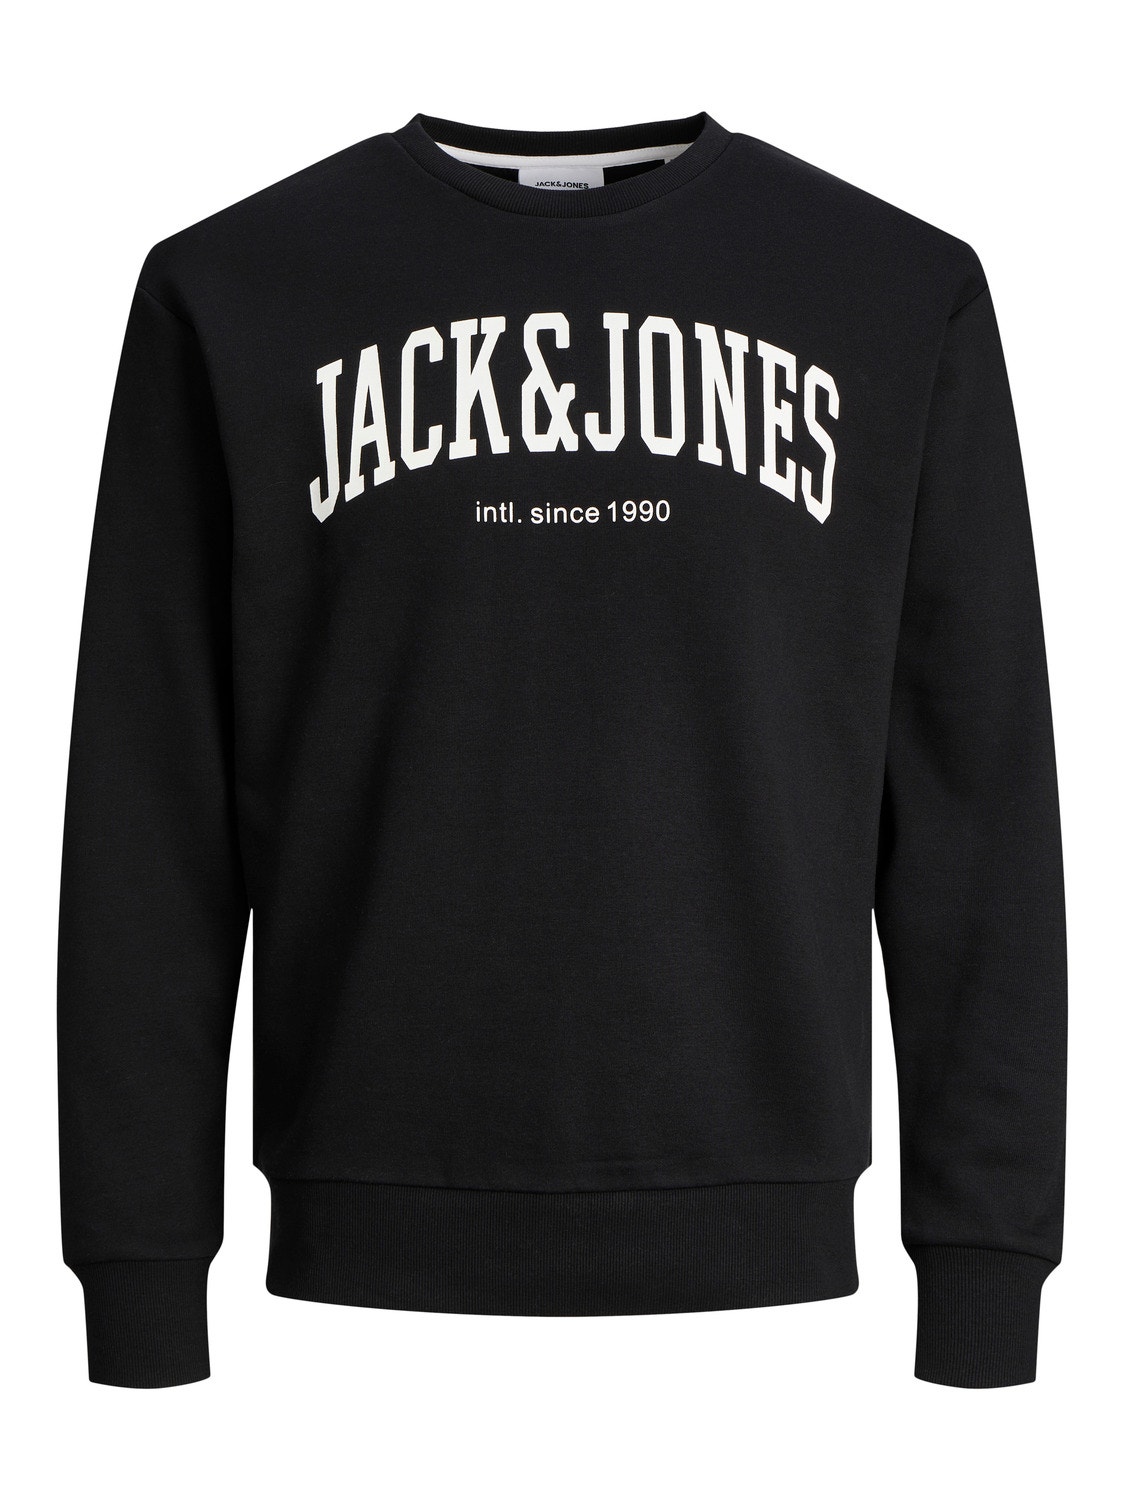 Jack & Jones Plain Crew neck Sweatshirt -Black - 12248431